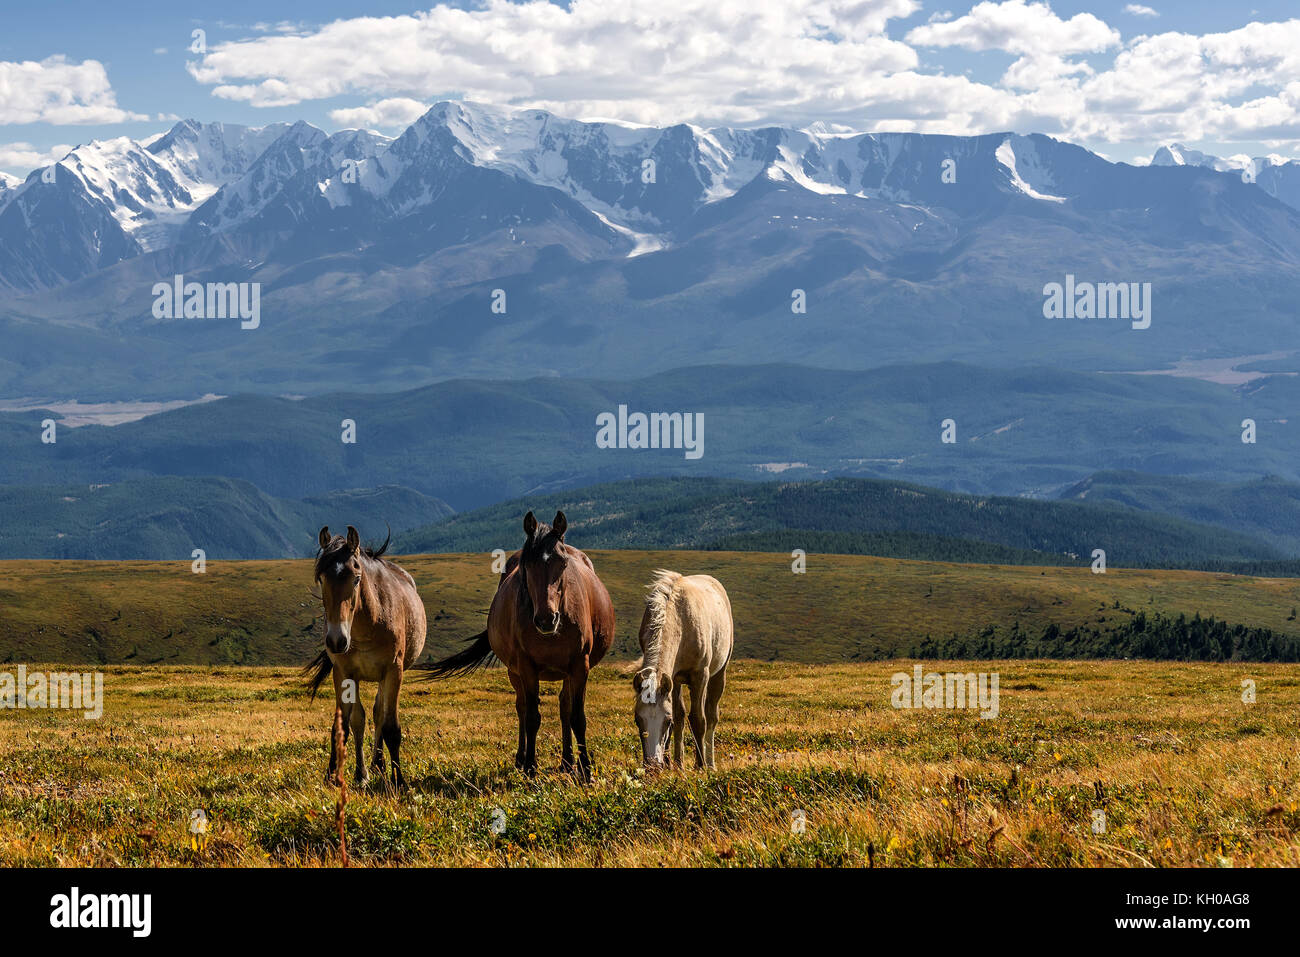 Vista panoramica con i cavalli al pascolo nel prato sulla collina contro lo sfondo delle montagne di neve e ghiacciai Foto Stock